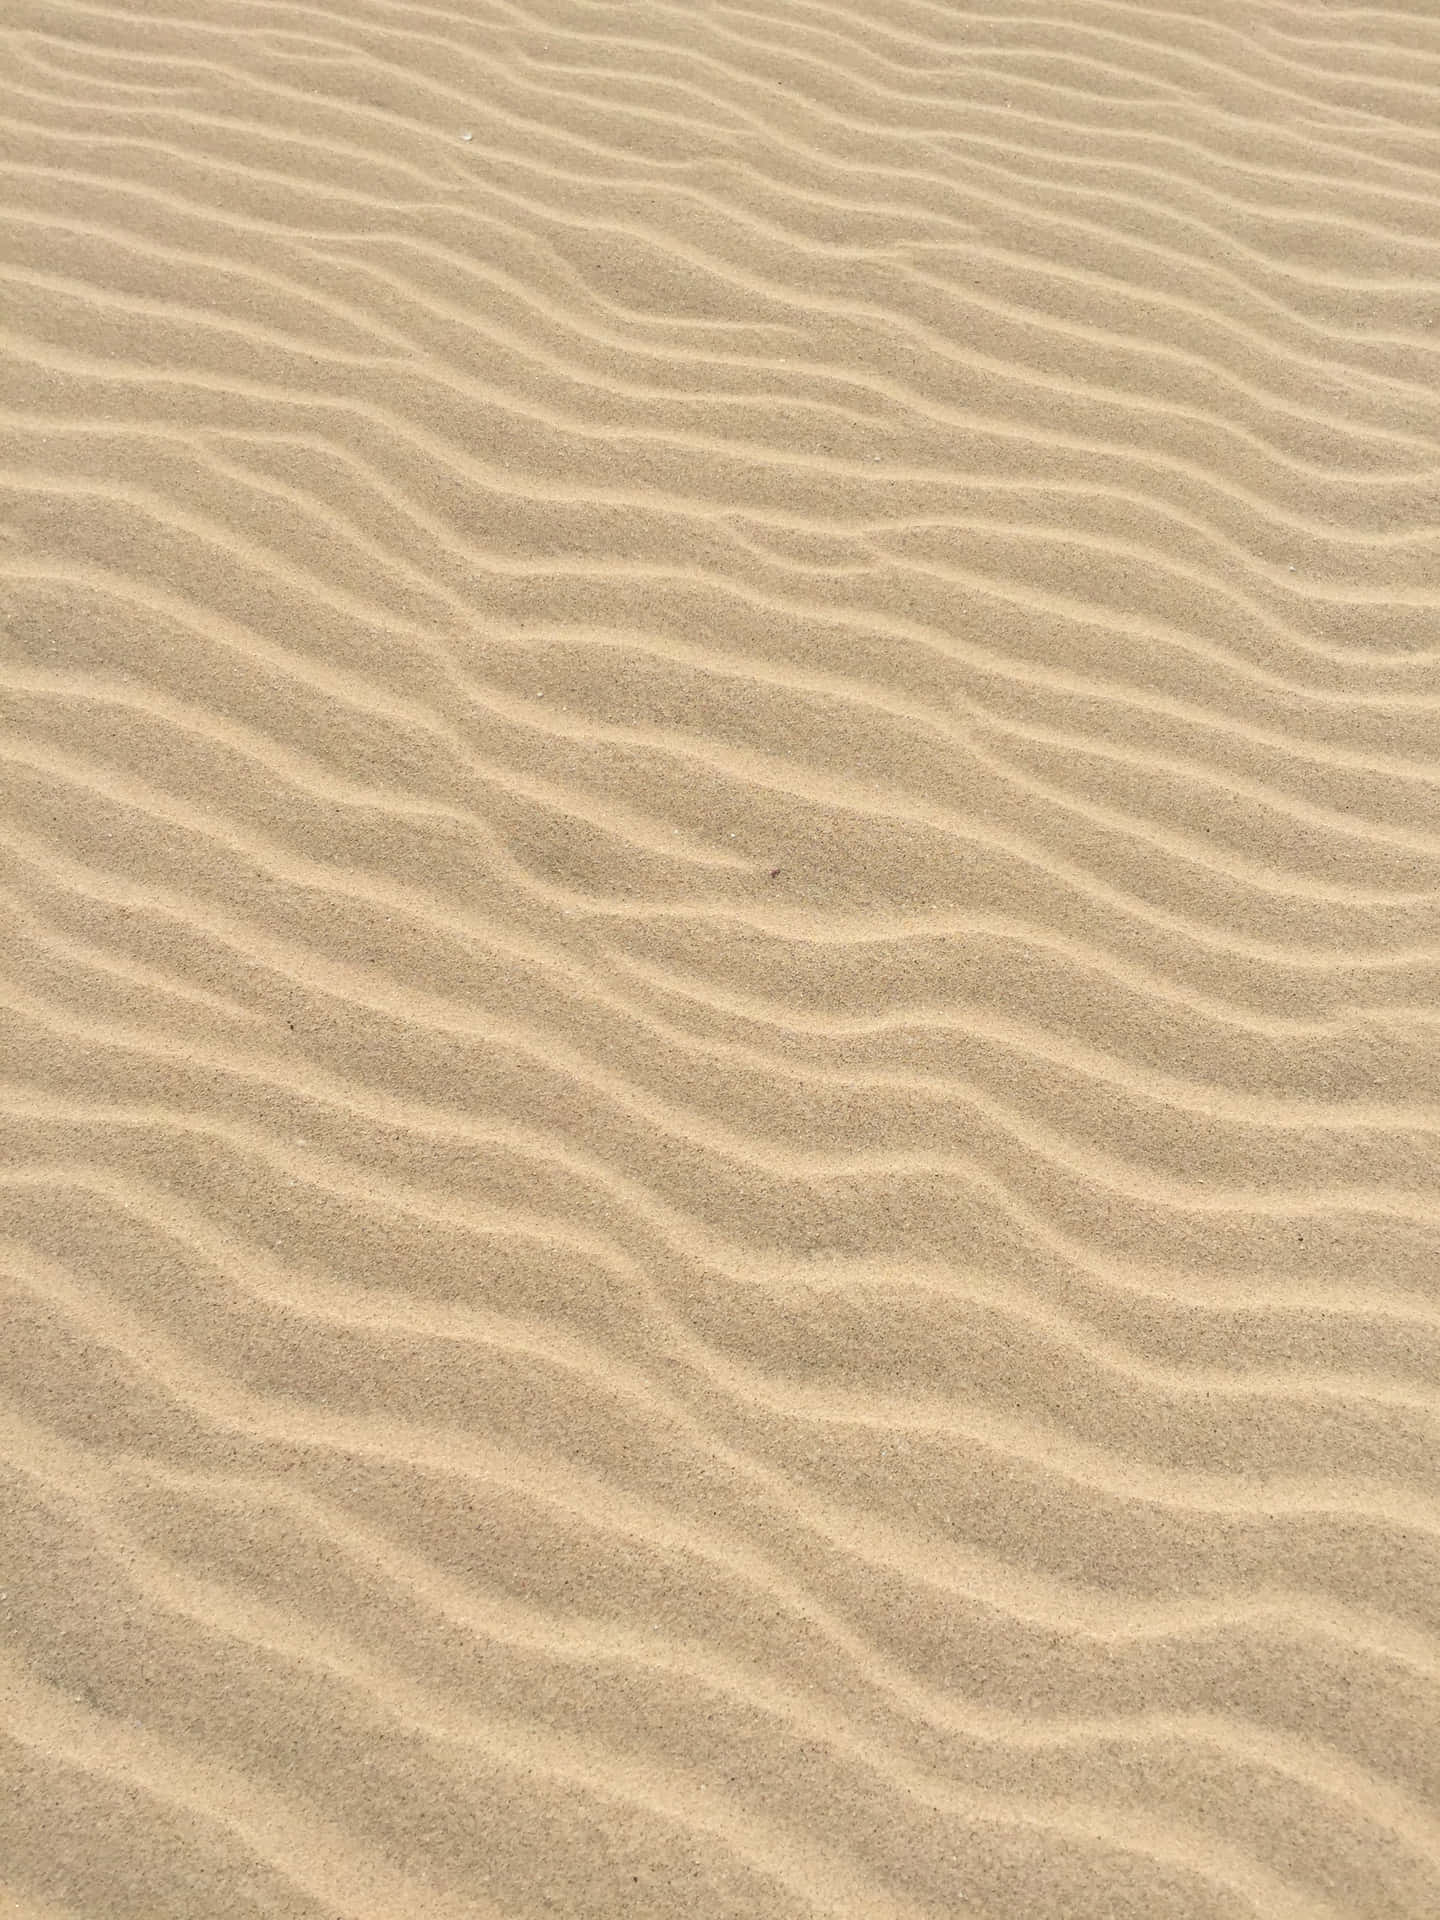 Wavy Sand Pattern Scheme Wallpaper